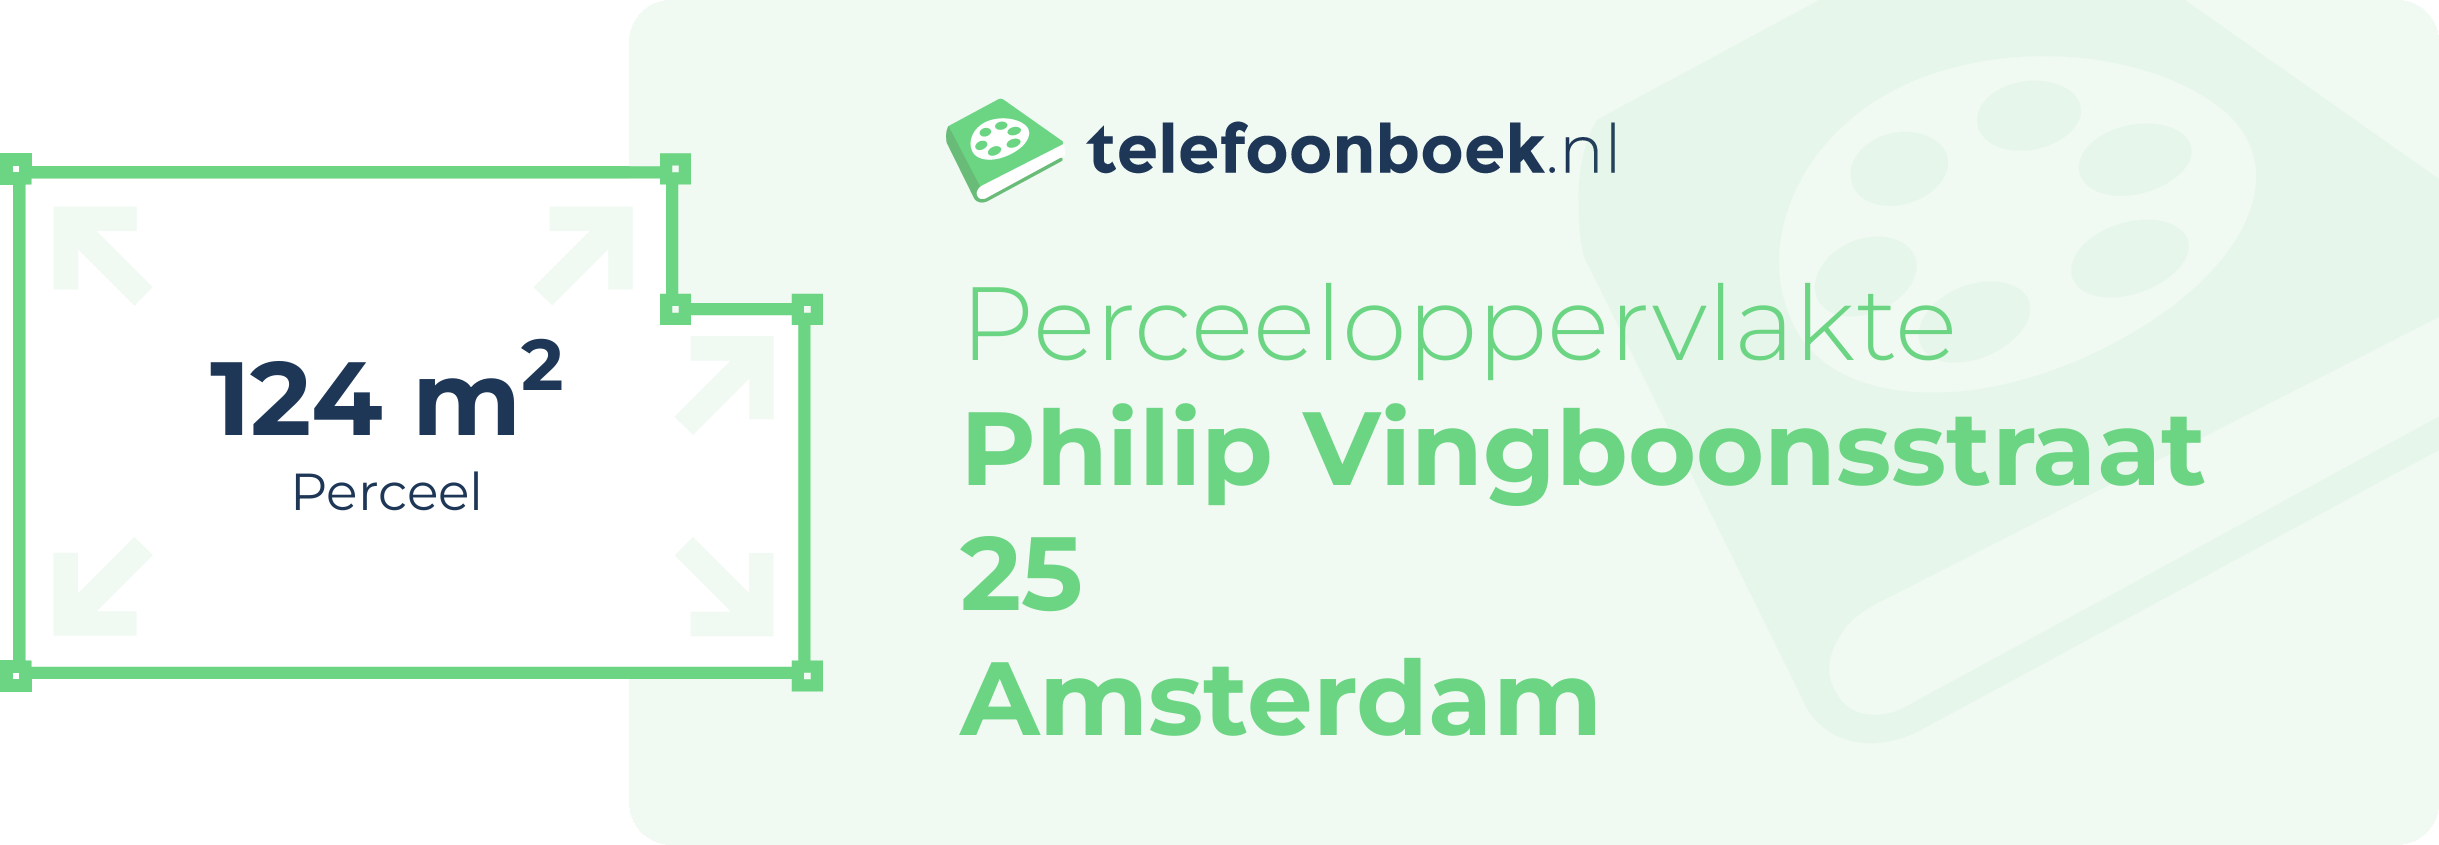 Perceeloppervlakte Philip Vingboonsstraat 25 Amsterdam